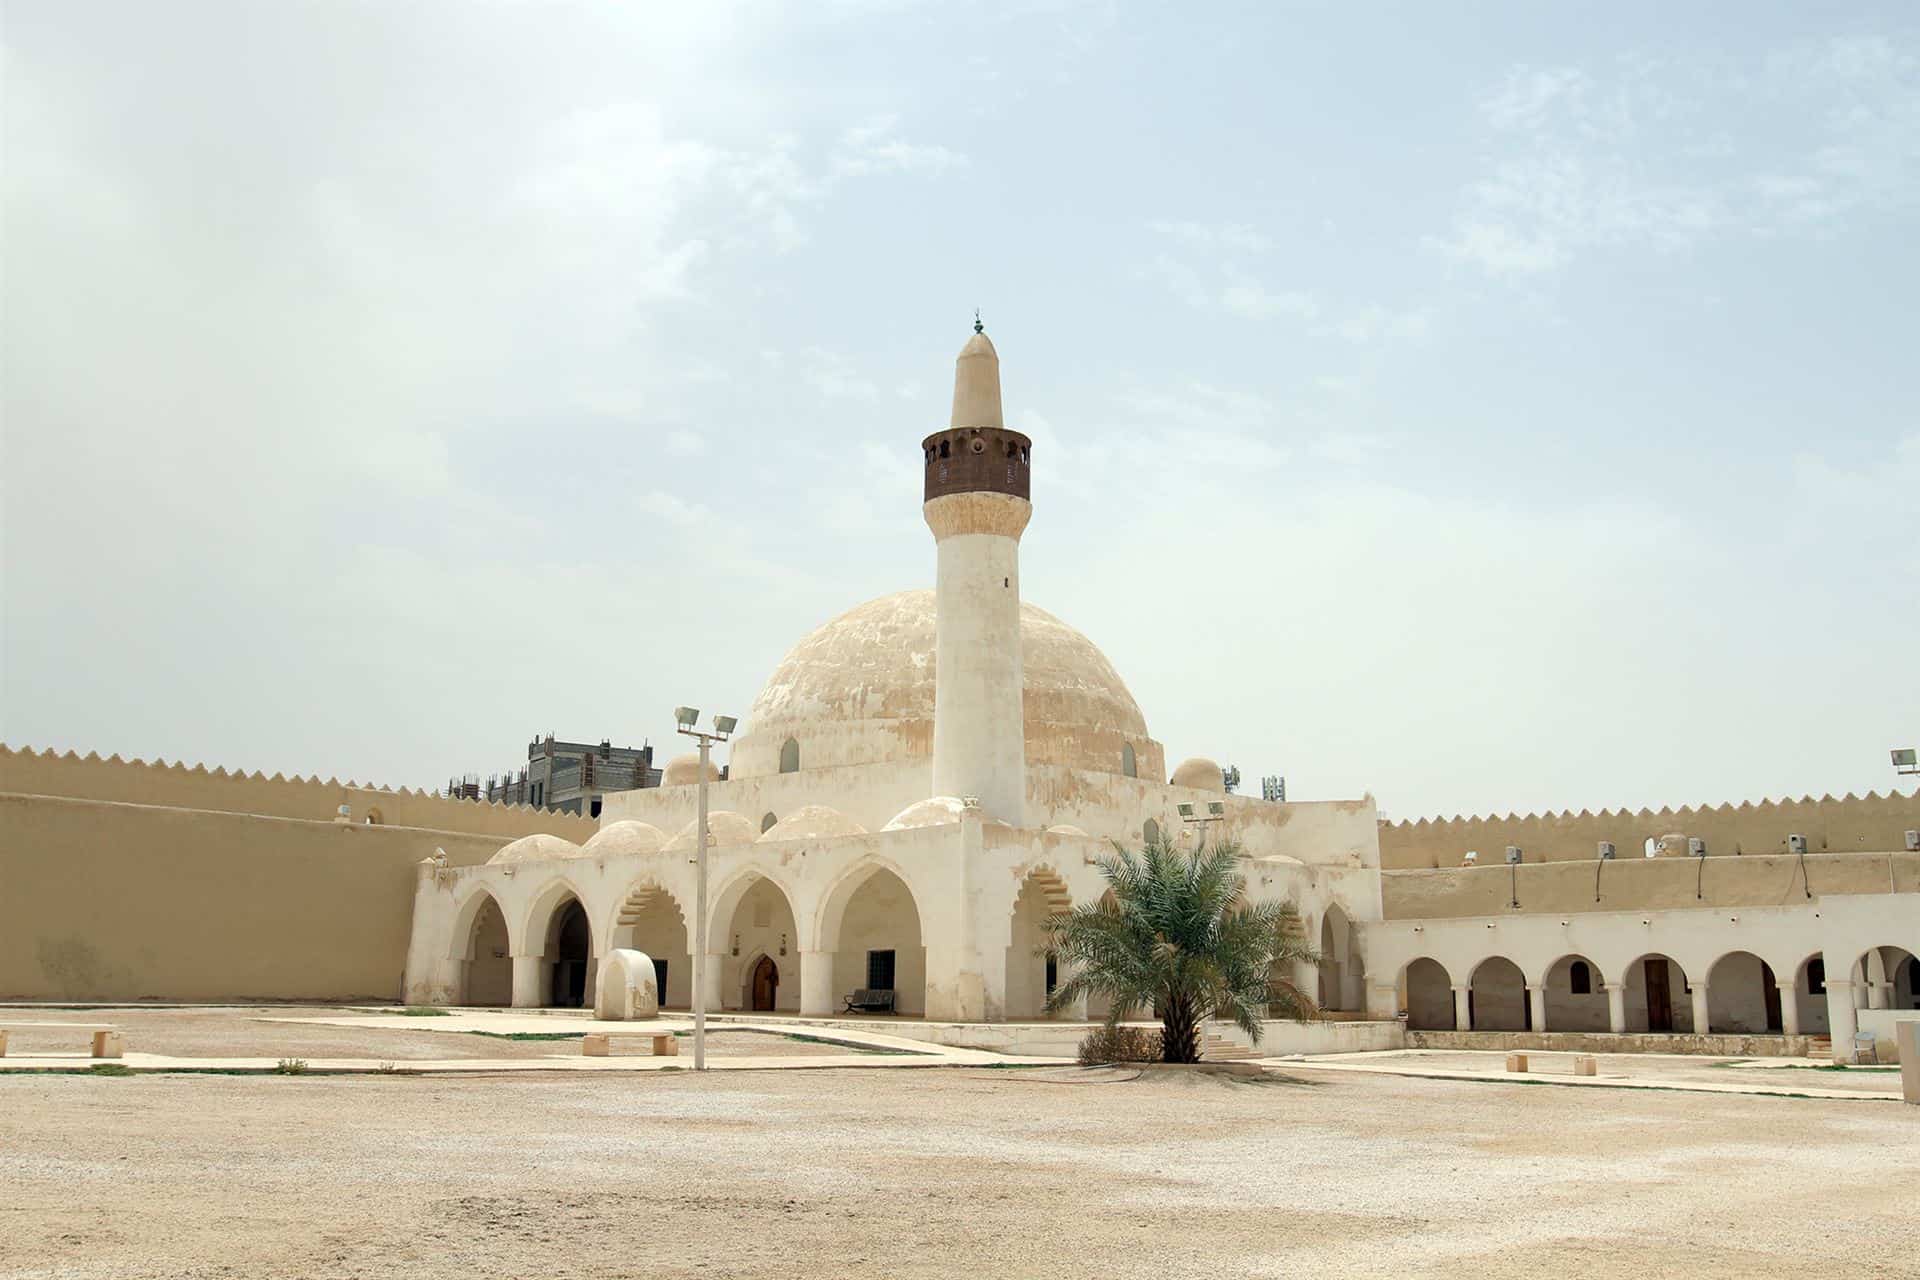 قصر إبراهيم بالأحساء .. تحفة معمارية تكشف حكاية المكان والزمان